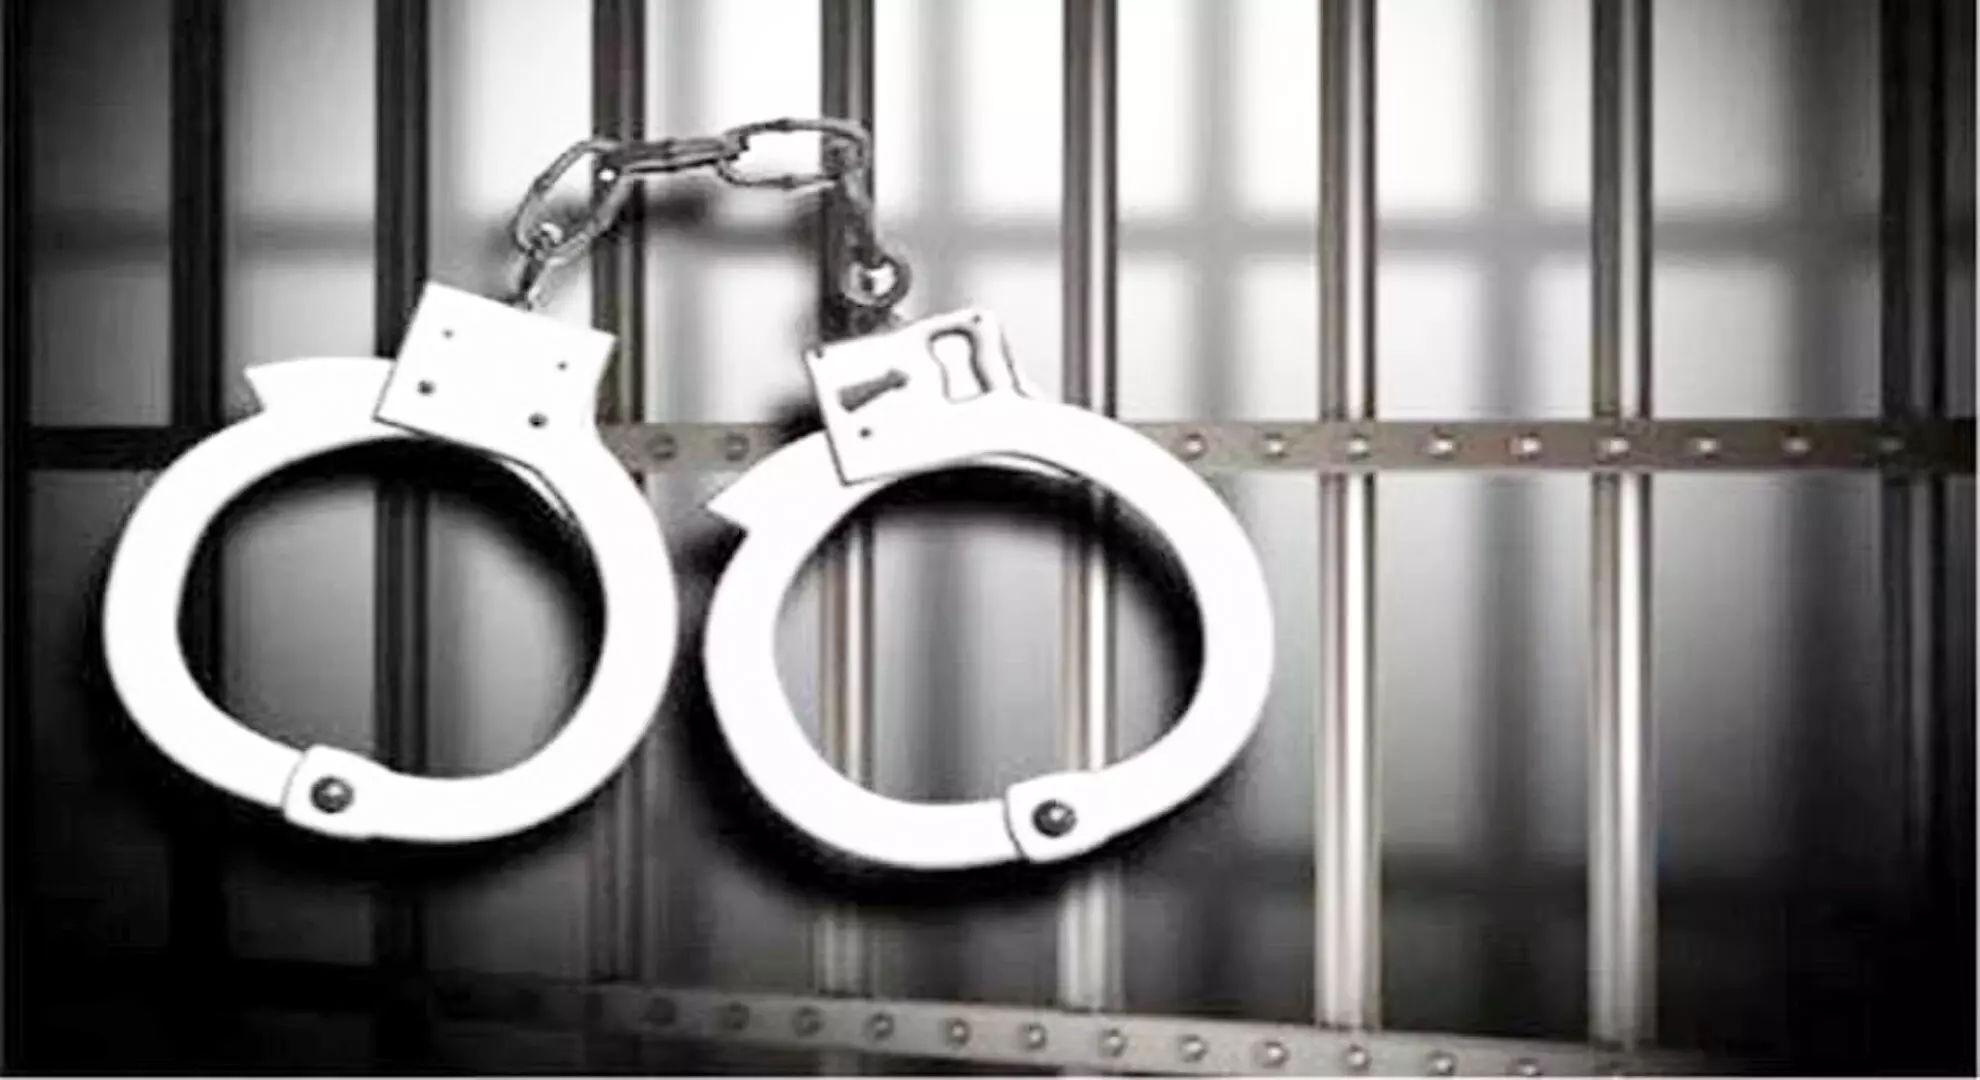 तमिलनाडु: मिल मालिक से 10 करोड़ रुपये से अधिक की धोखाधड़ी करने के आरोप में दो गिरफ्तार